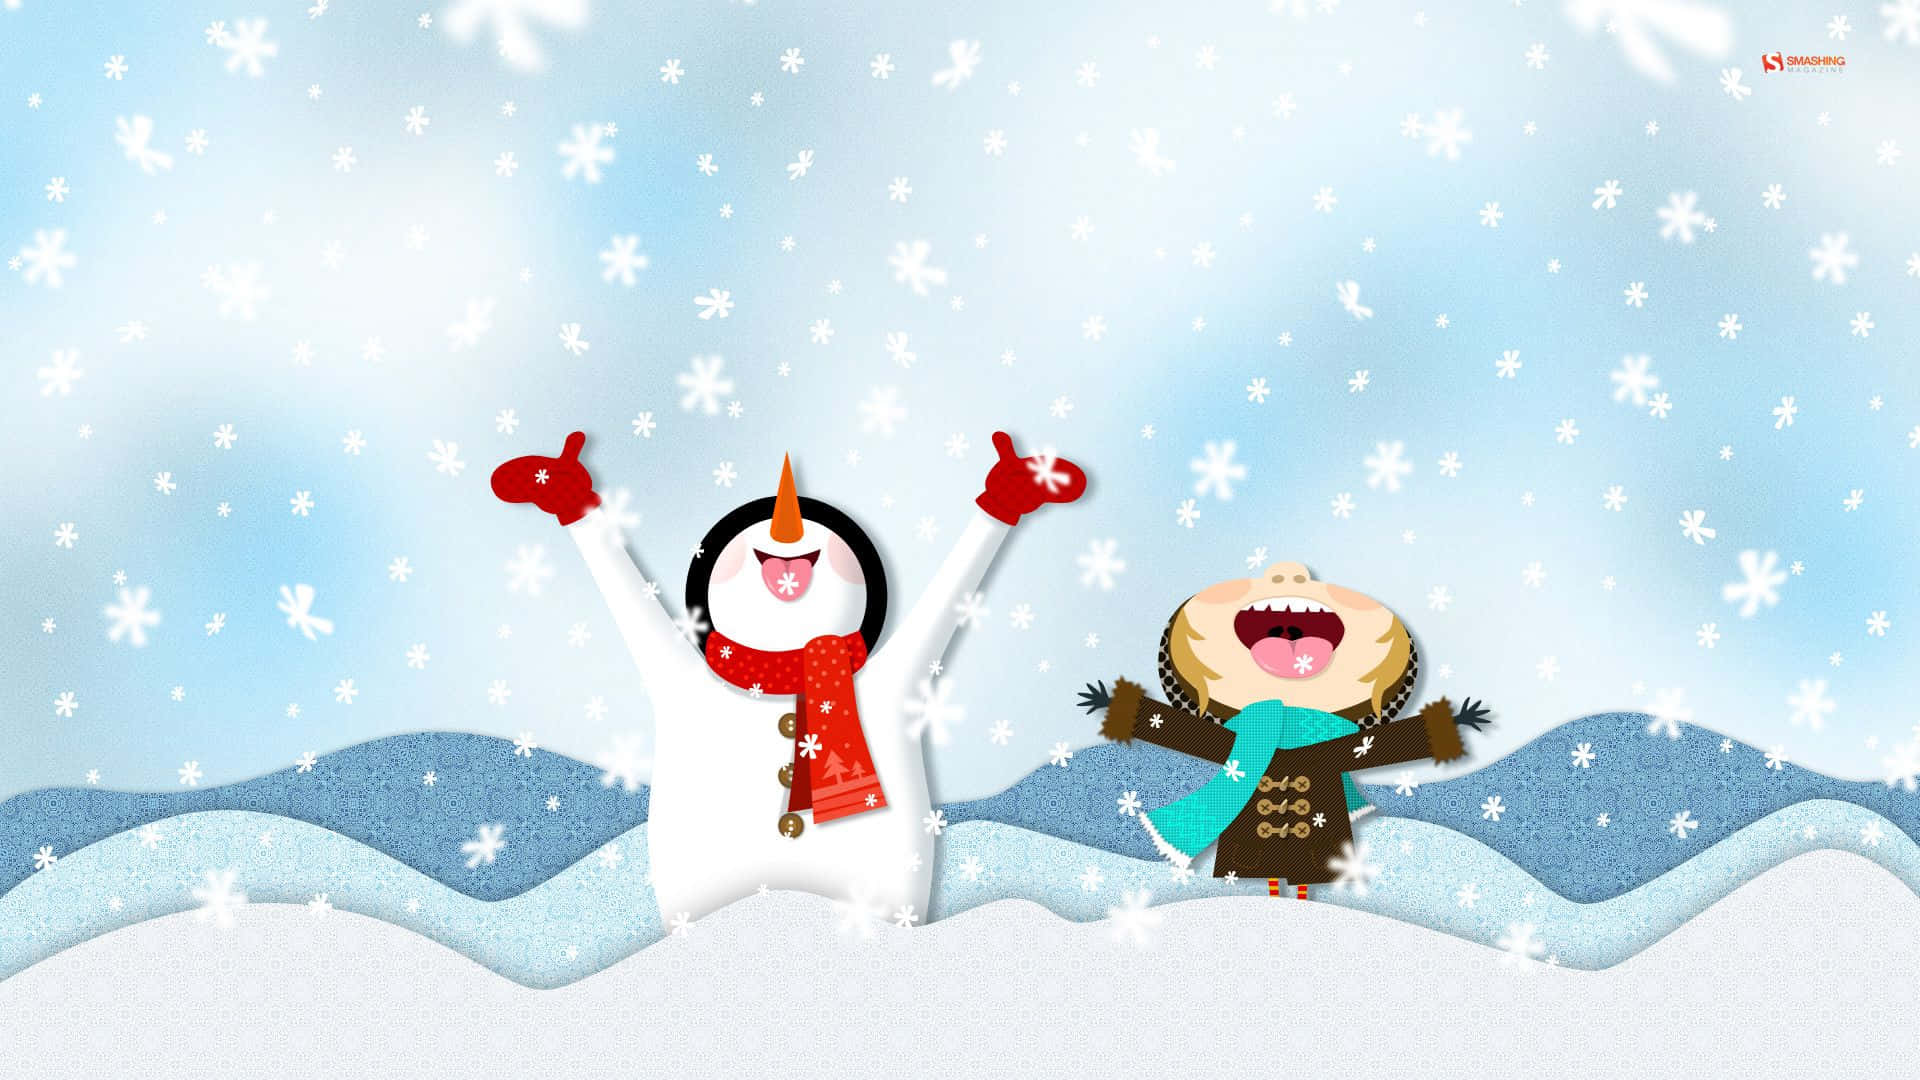 Showman And Kid On Winter Wonderland Background